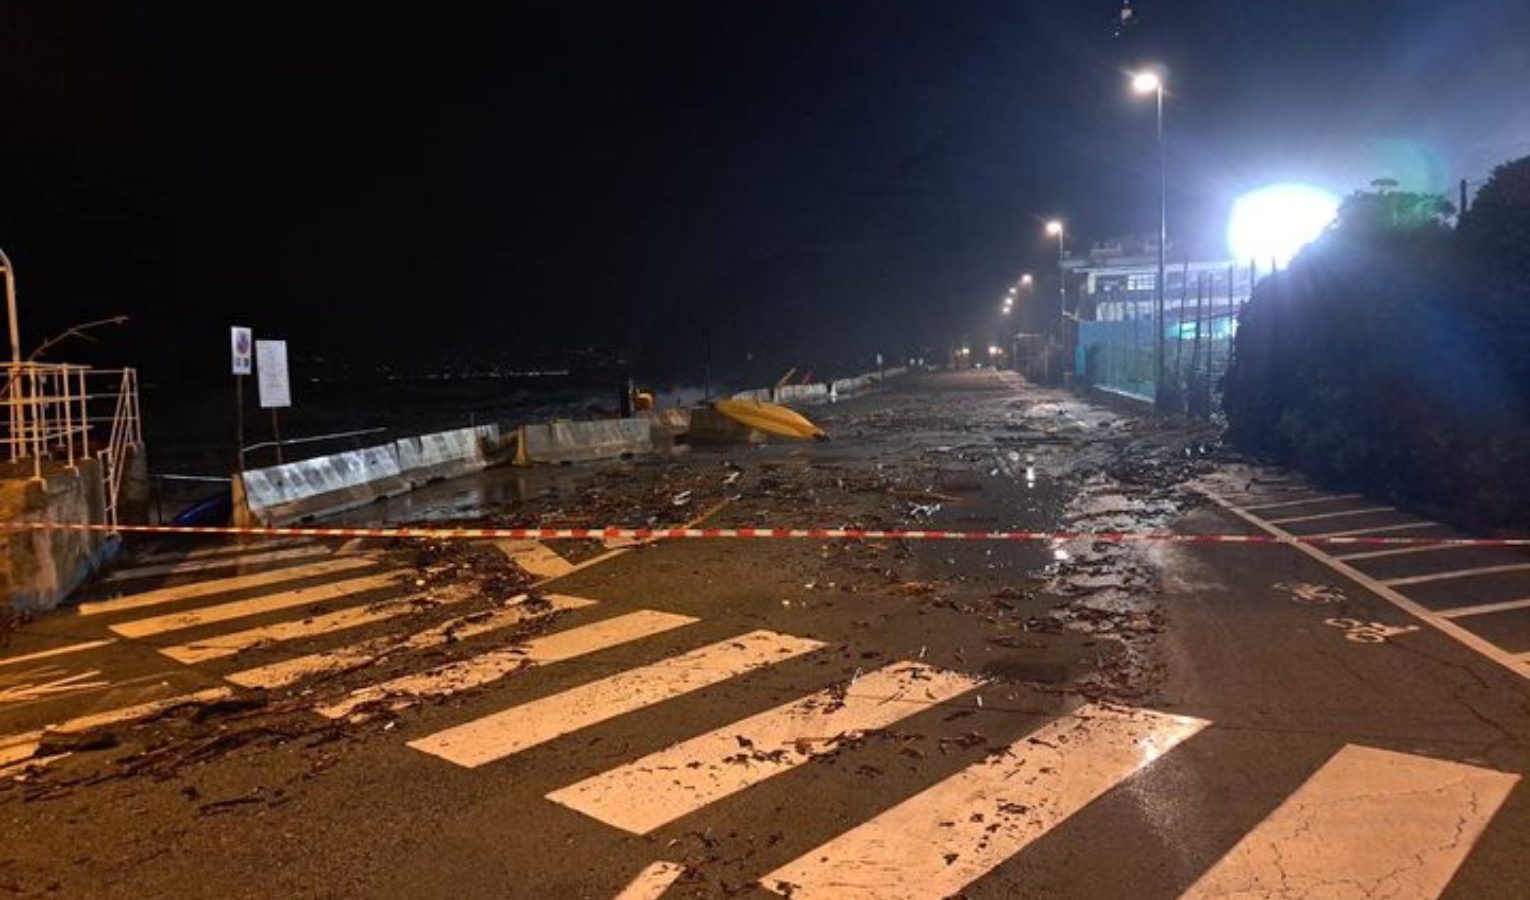 Mareggiata in Liguria, le onde invadono i lungomare: a Lavagna evacuate 50 persone da un ristorante